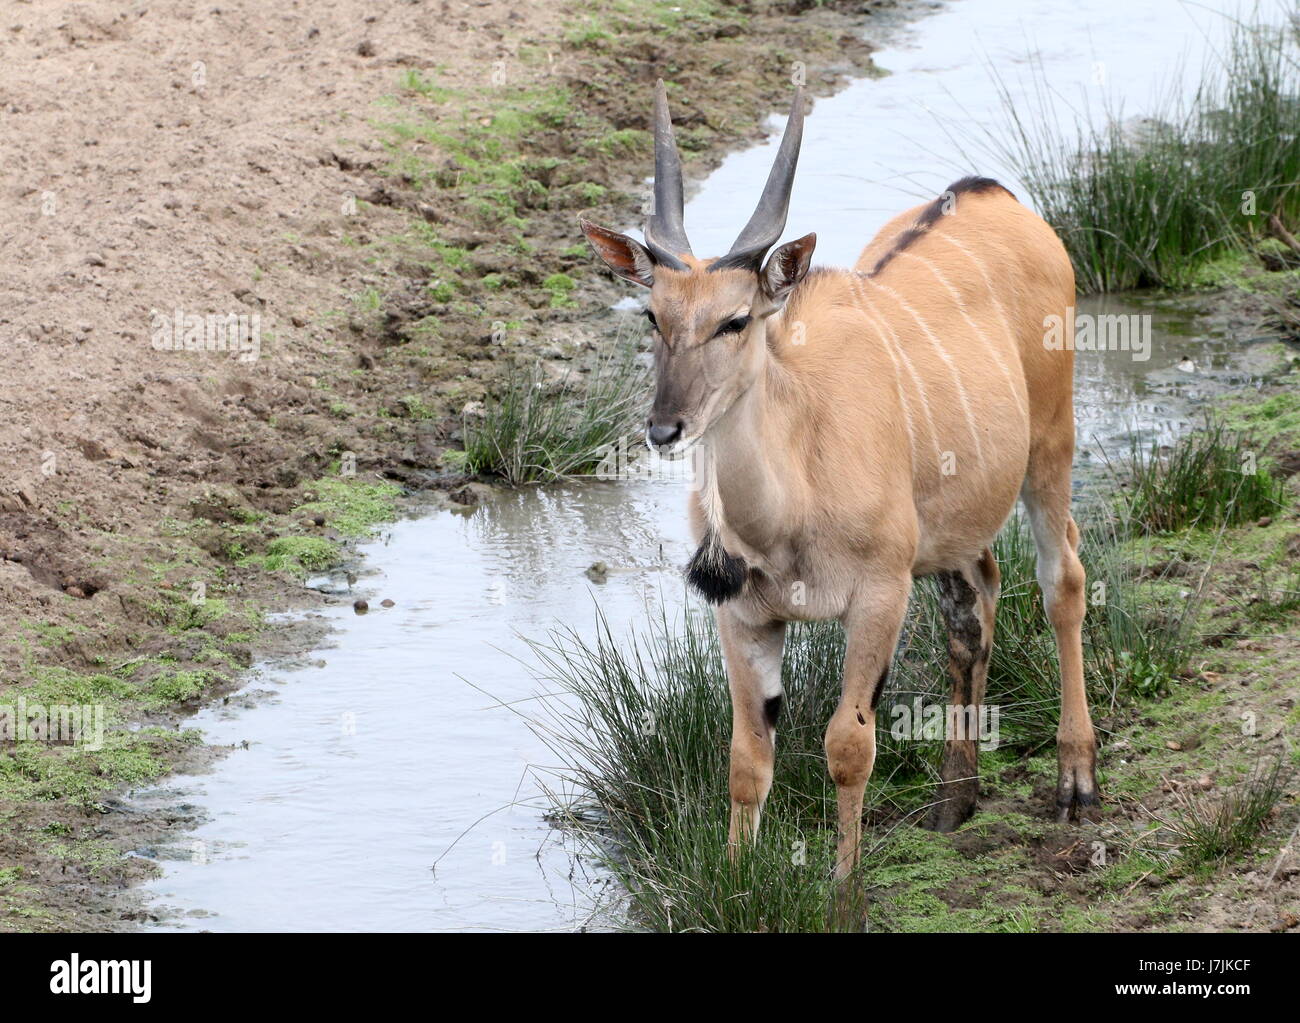 Southern African oder gemeinsame Eland-Antilopen (Tauro Oryx) an einem kleinen Bach trinken. Stockfoto